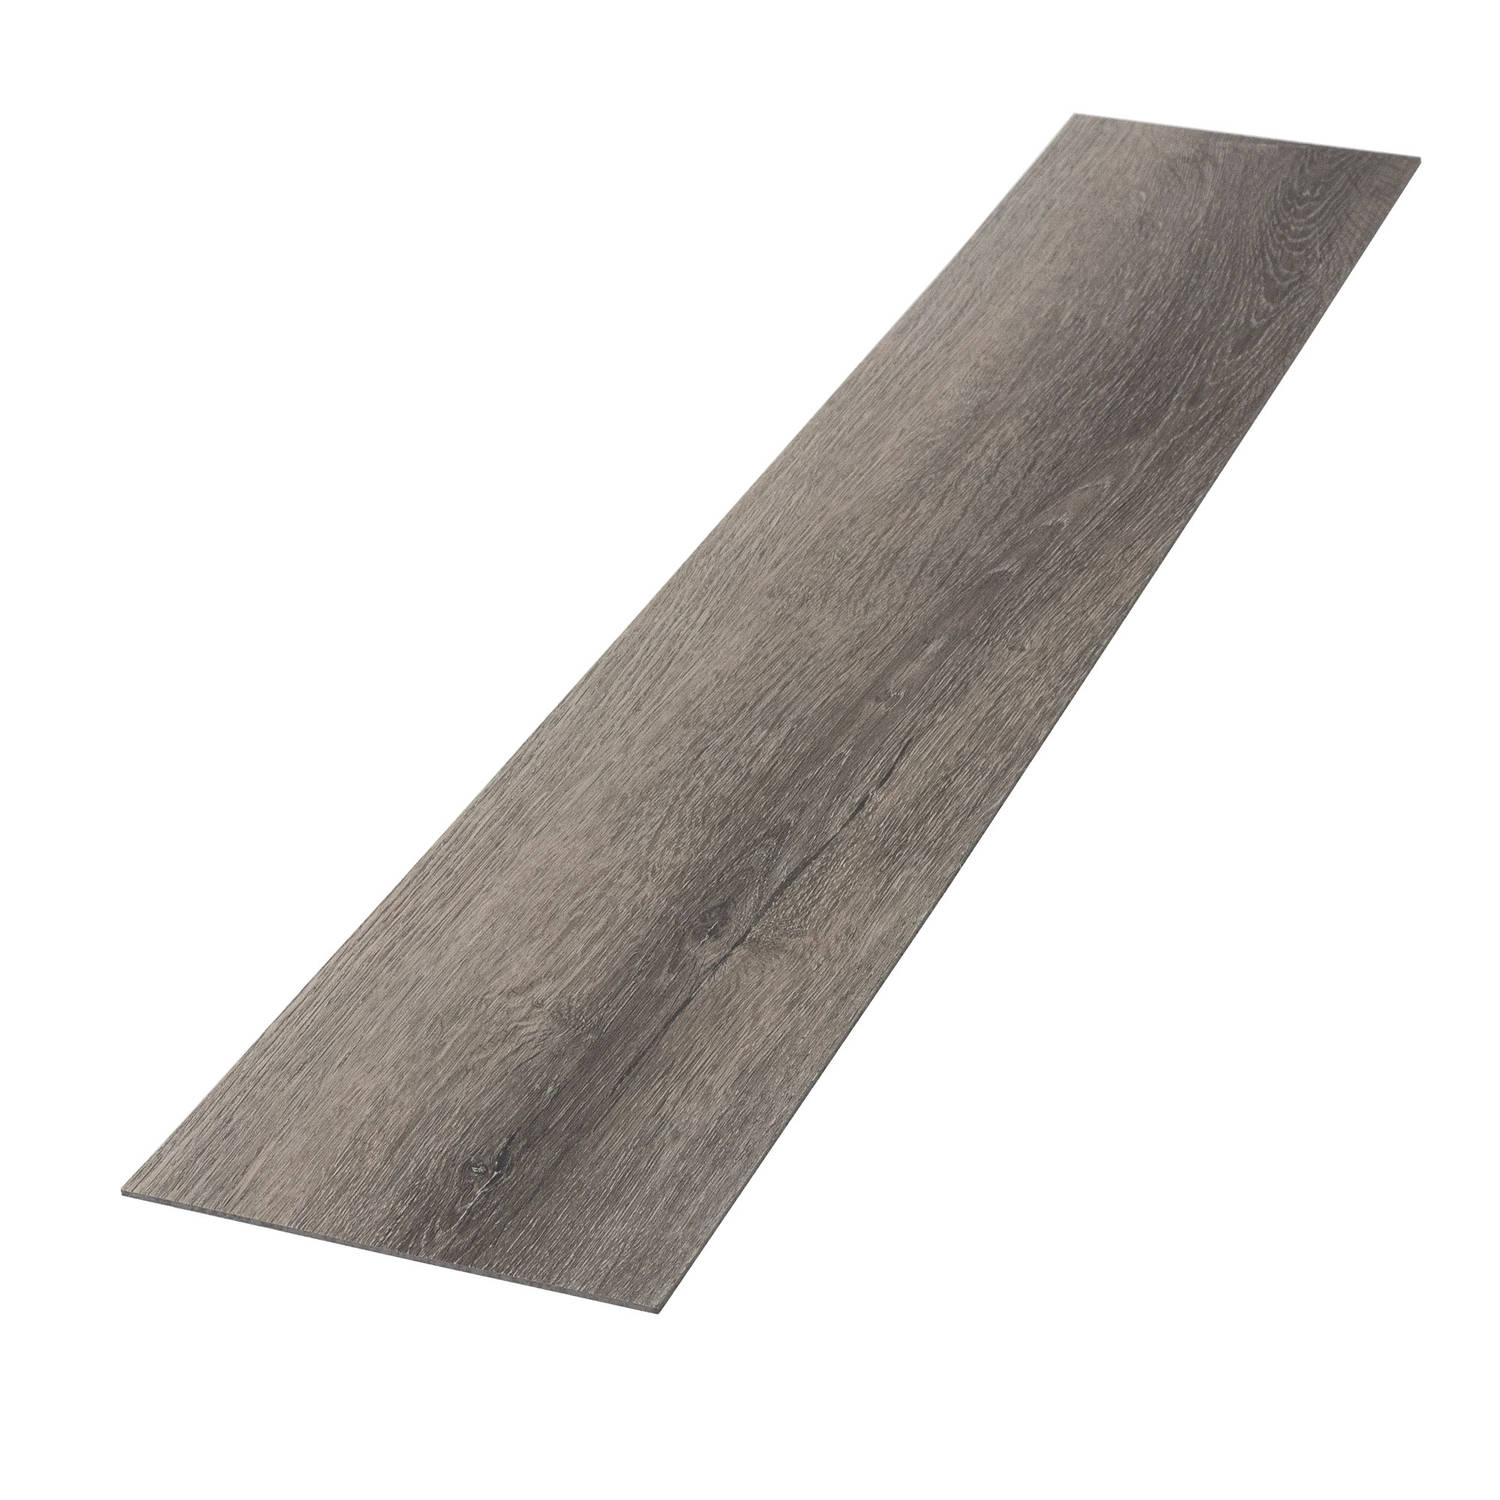 Deluxe PVC klevende vinylvloer voor 2,3 m² grenen grijs 2 mm dik ML-Design